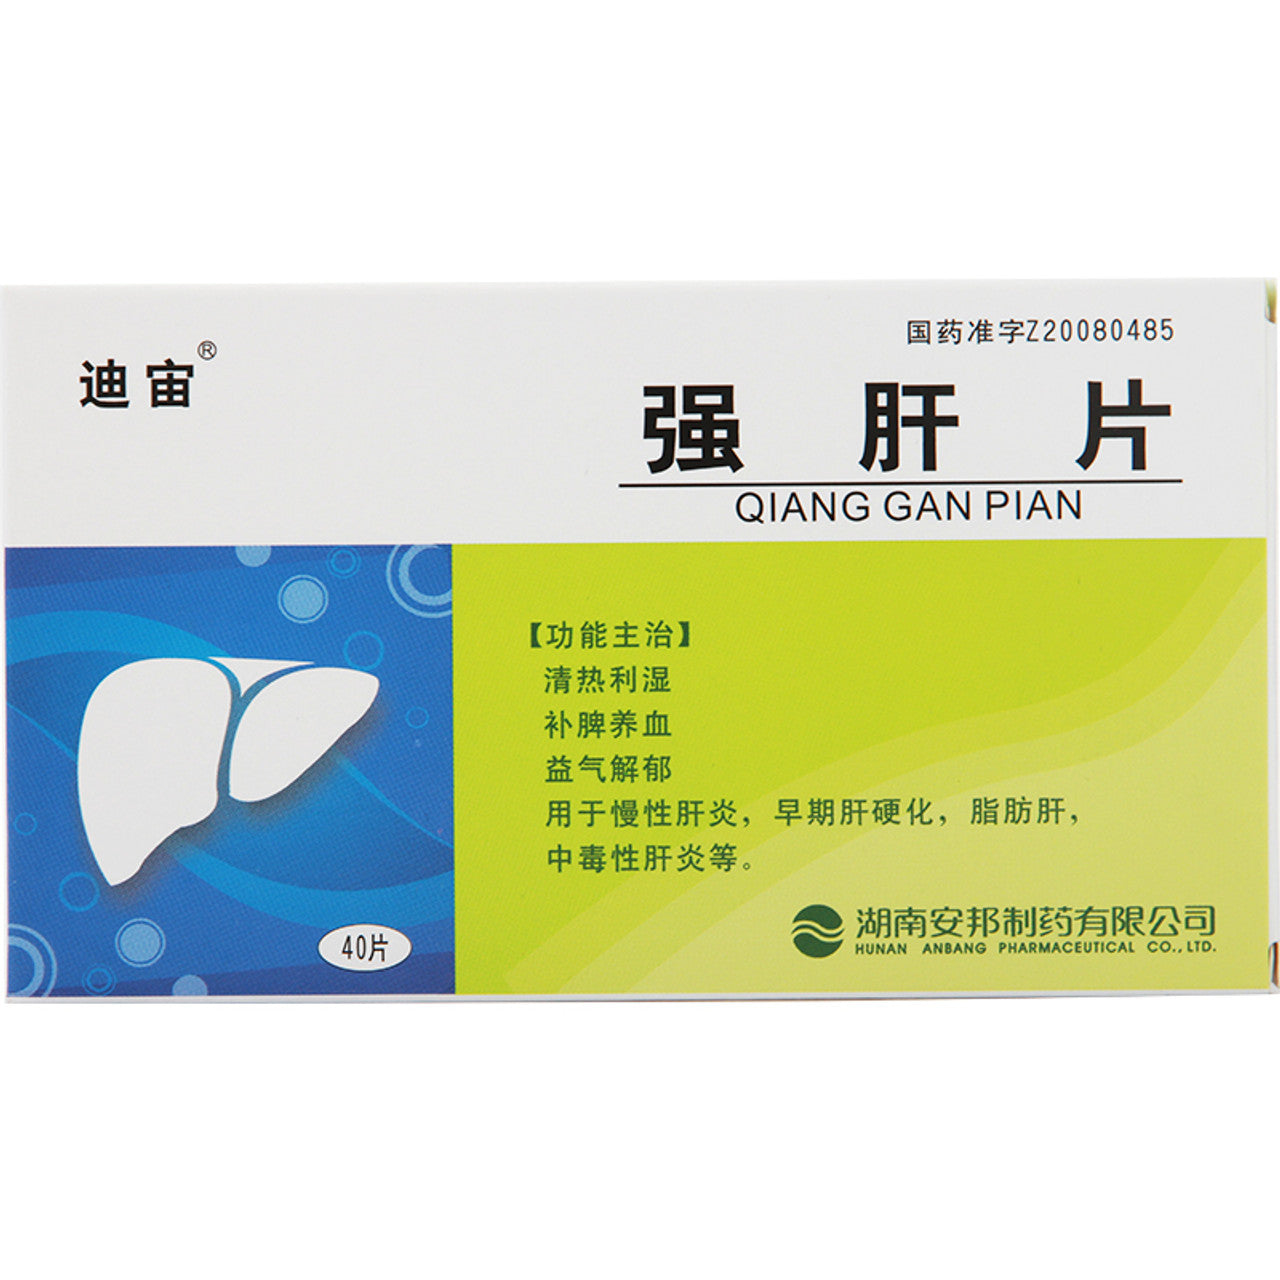 China Herb. Qianggan Pian or Qianggan Tablets for chronic hepatitis, early cirrhosis, fatty liver, toxic hepatitis, etc. Qiang Gan Pian